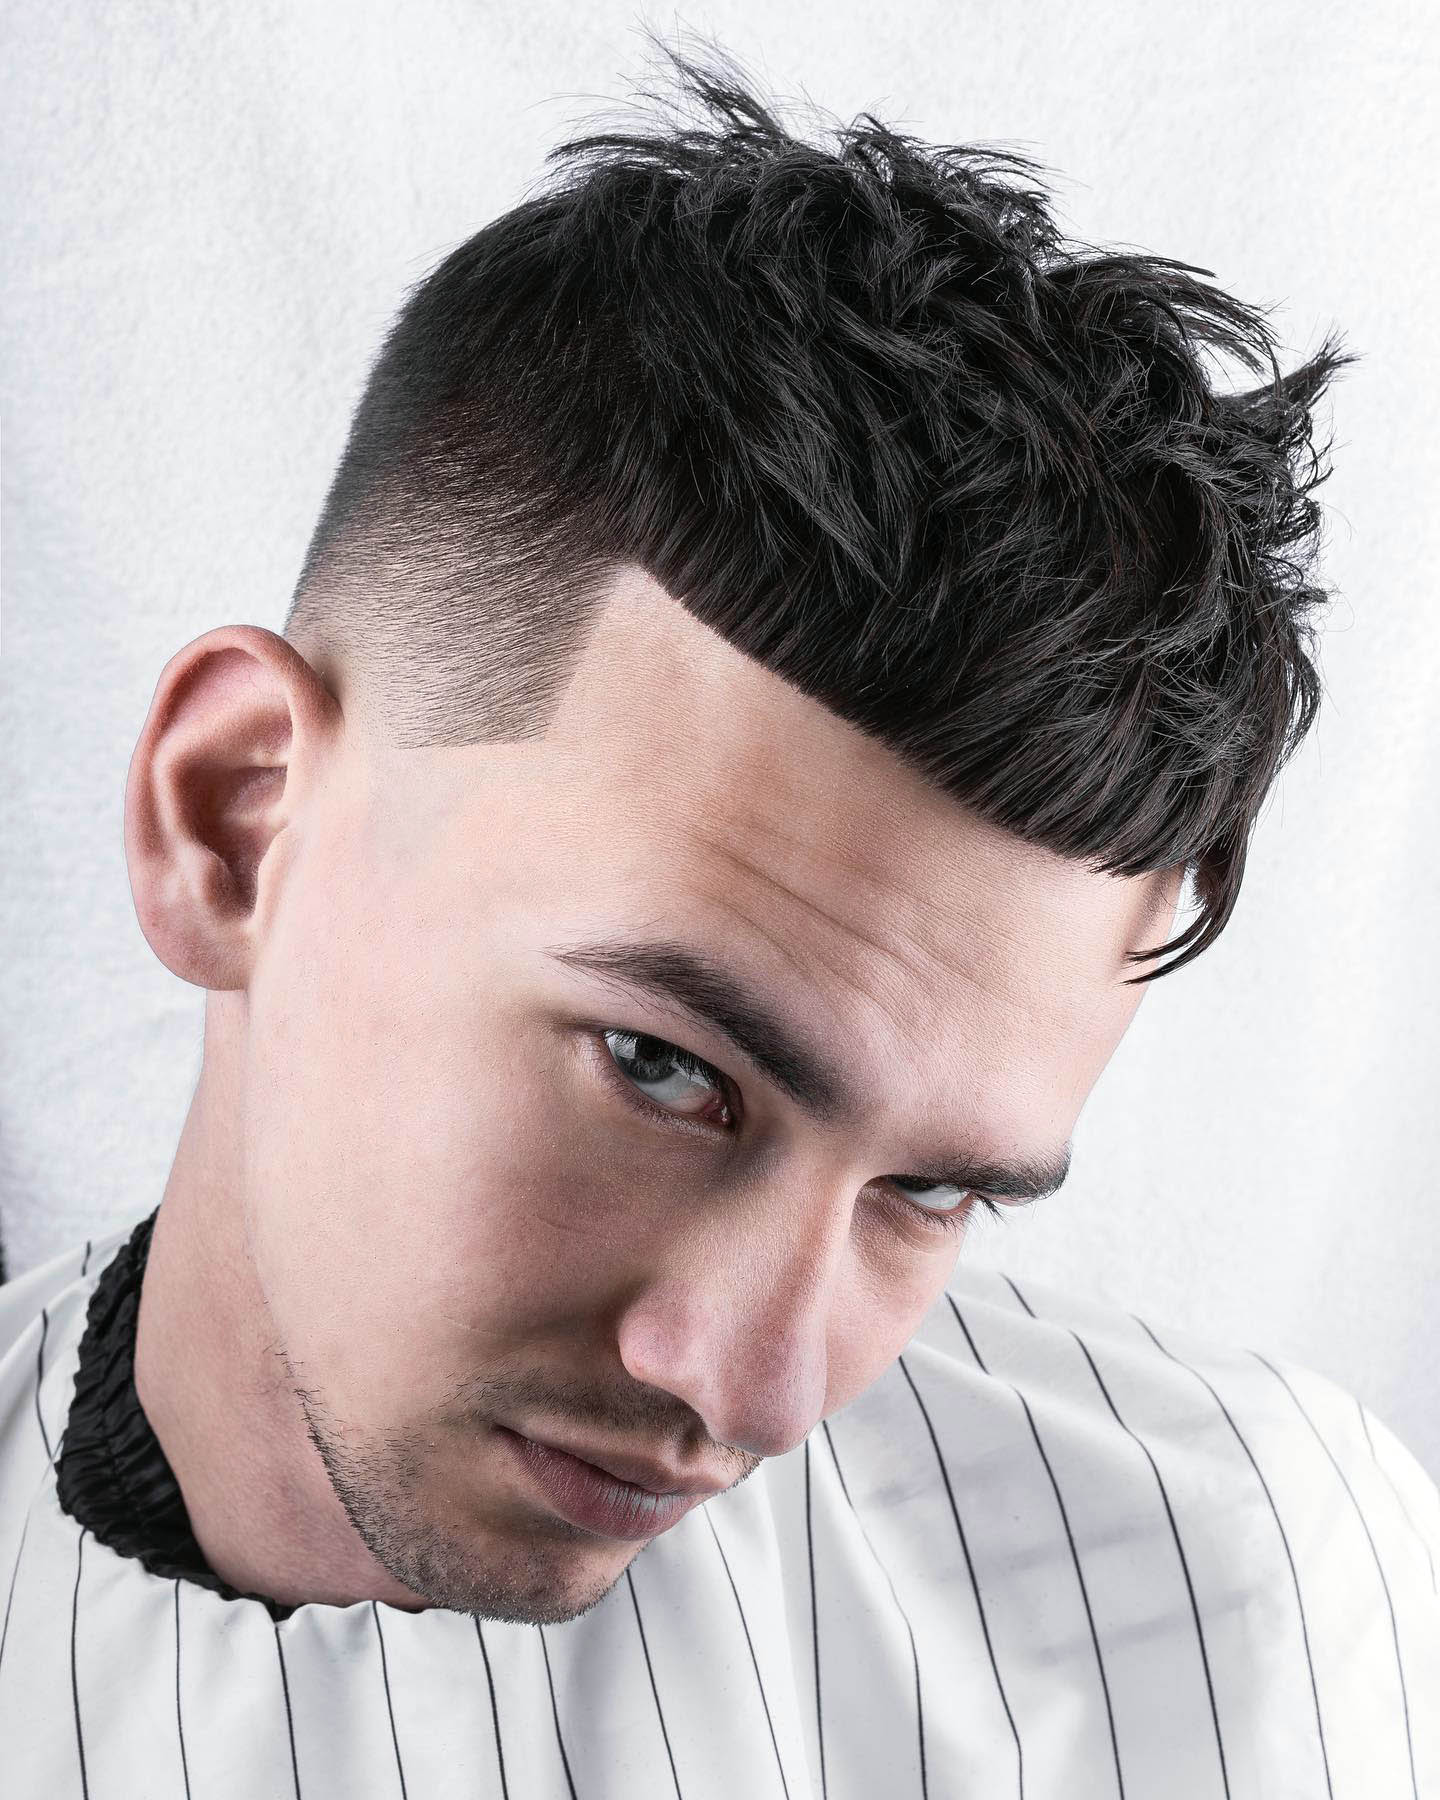 2 step by step सिखे Skin Fade bared हेयरस्टाइल tutorial barber shop cutting  #hairstyle #haircut - YouTube